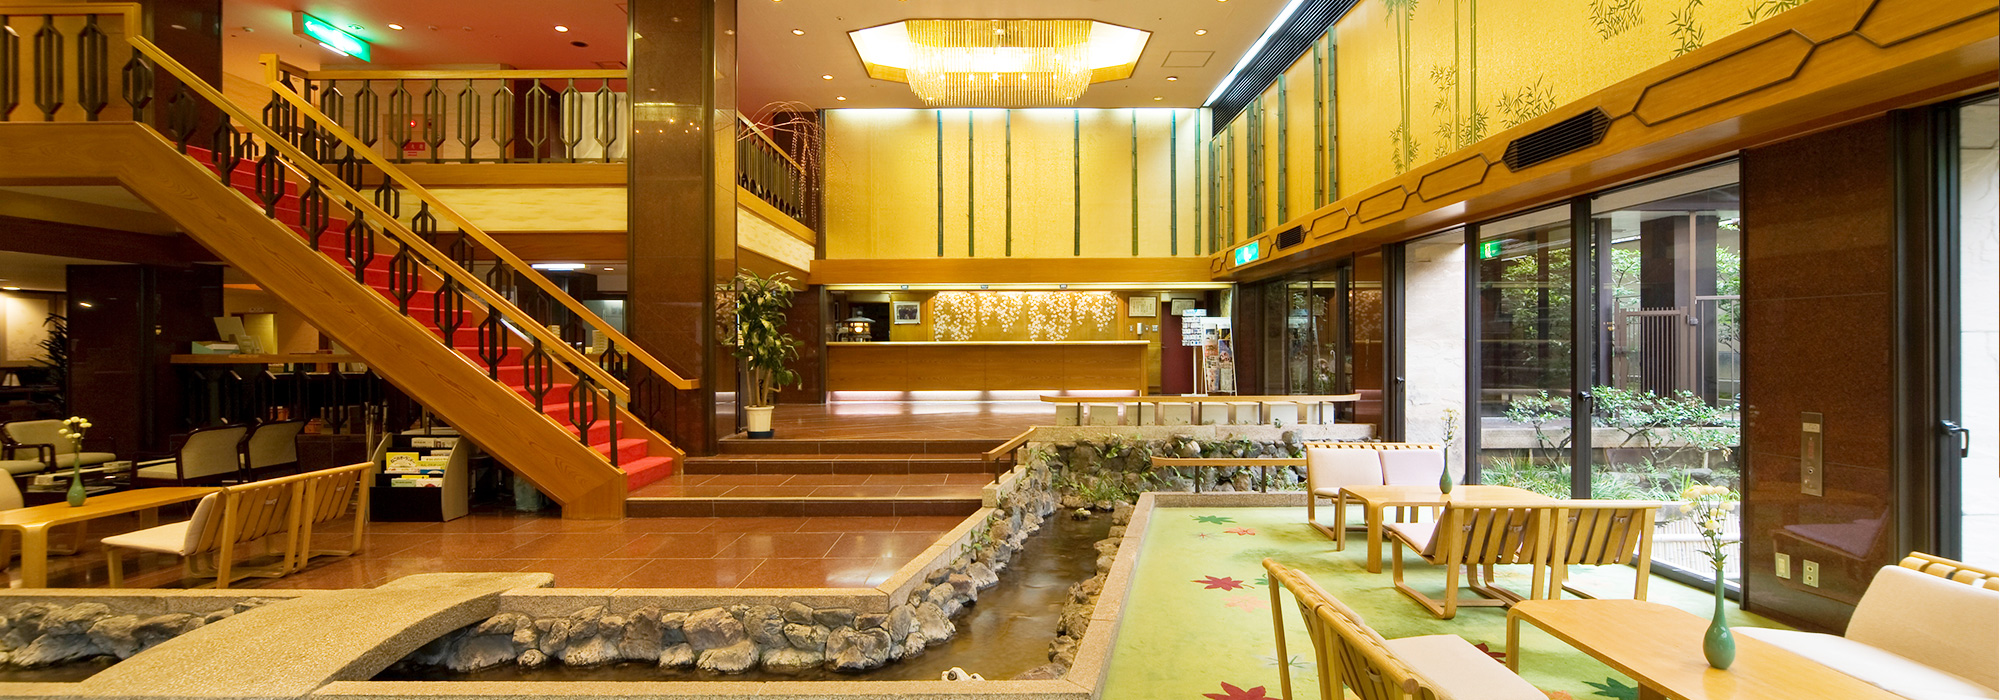 三木半旅館